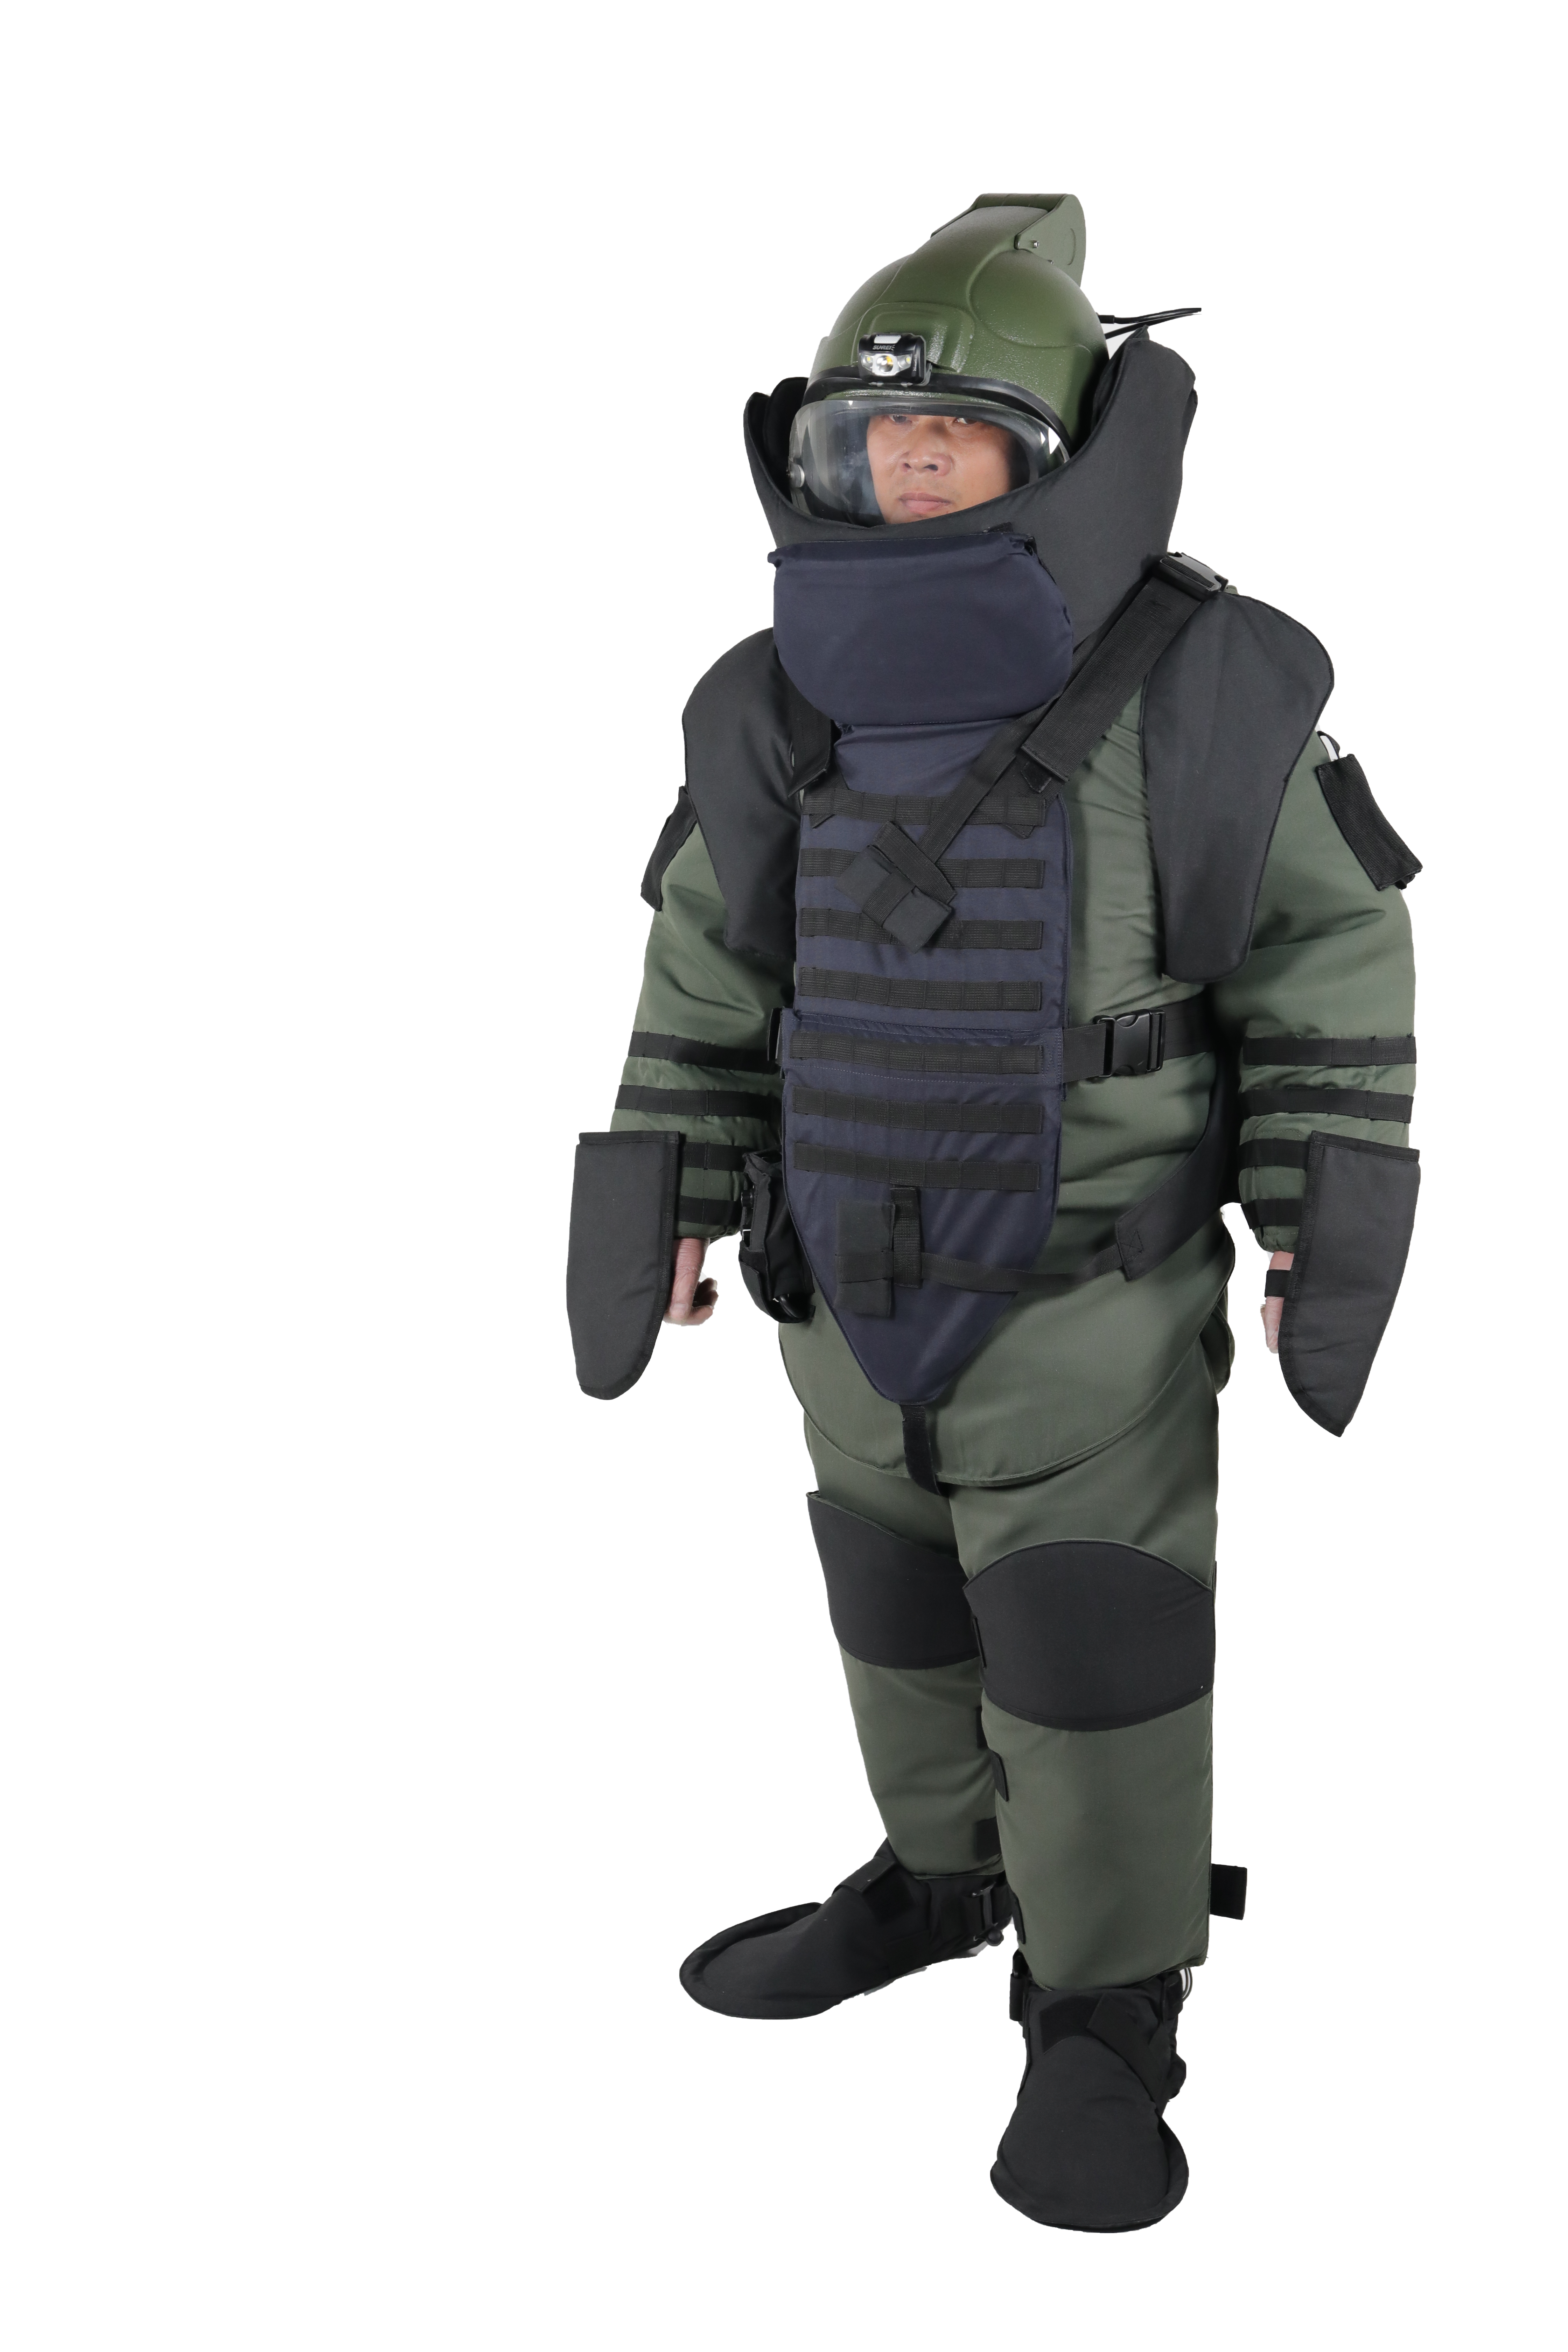 Bomb Suit EOD 9 3D Model - TurboSquid 1990433